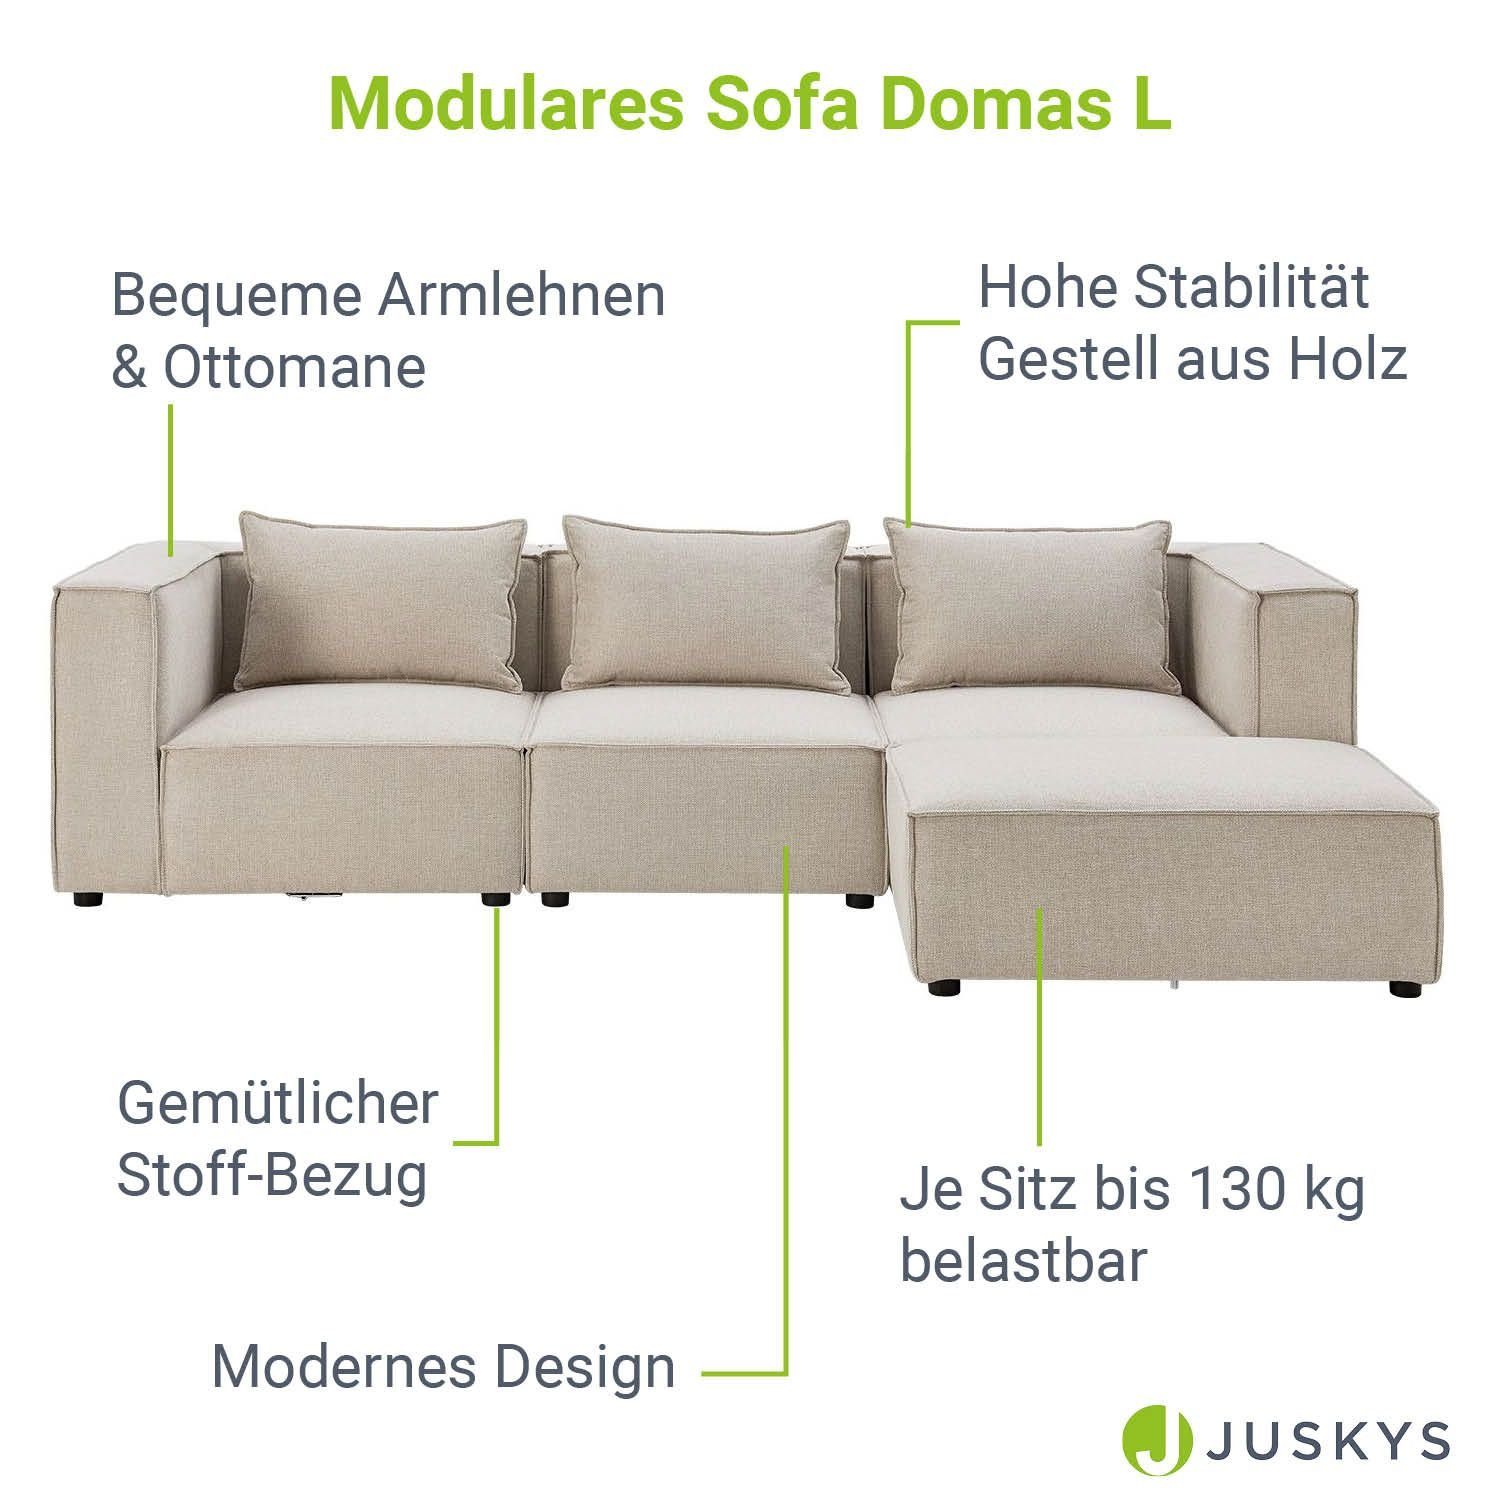 4 mane mit Teile, Juskys Wohnzimmer, Couch Domas, & für L, Kissen Sitzer Ecksofa modulare 3